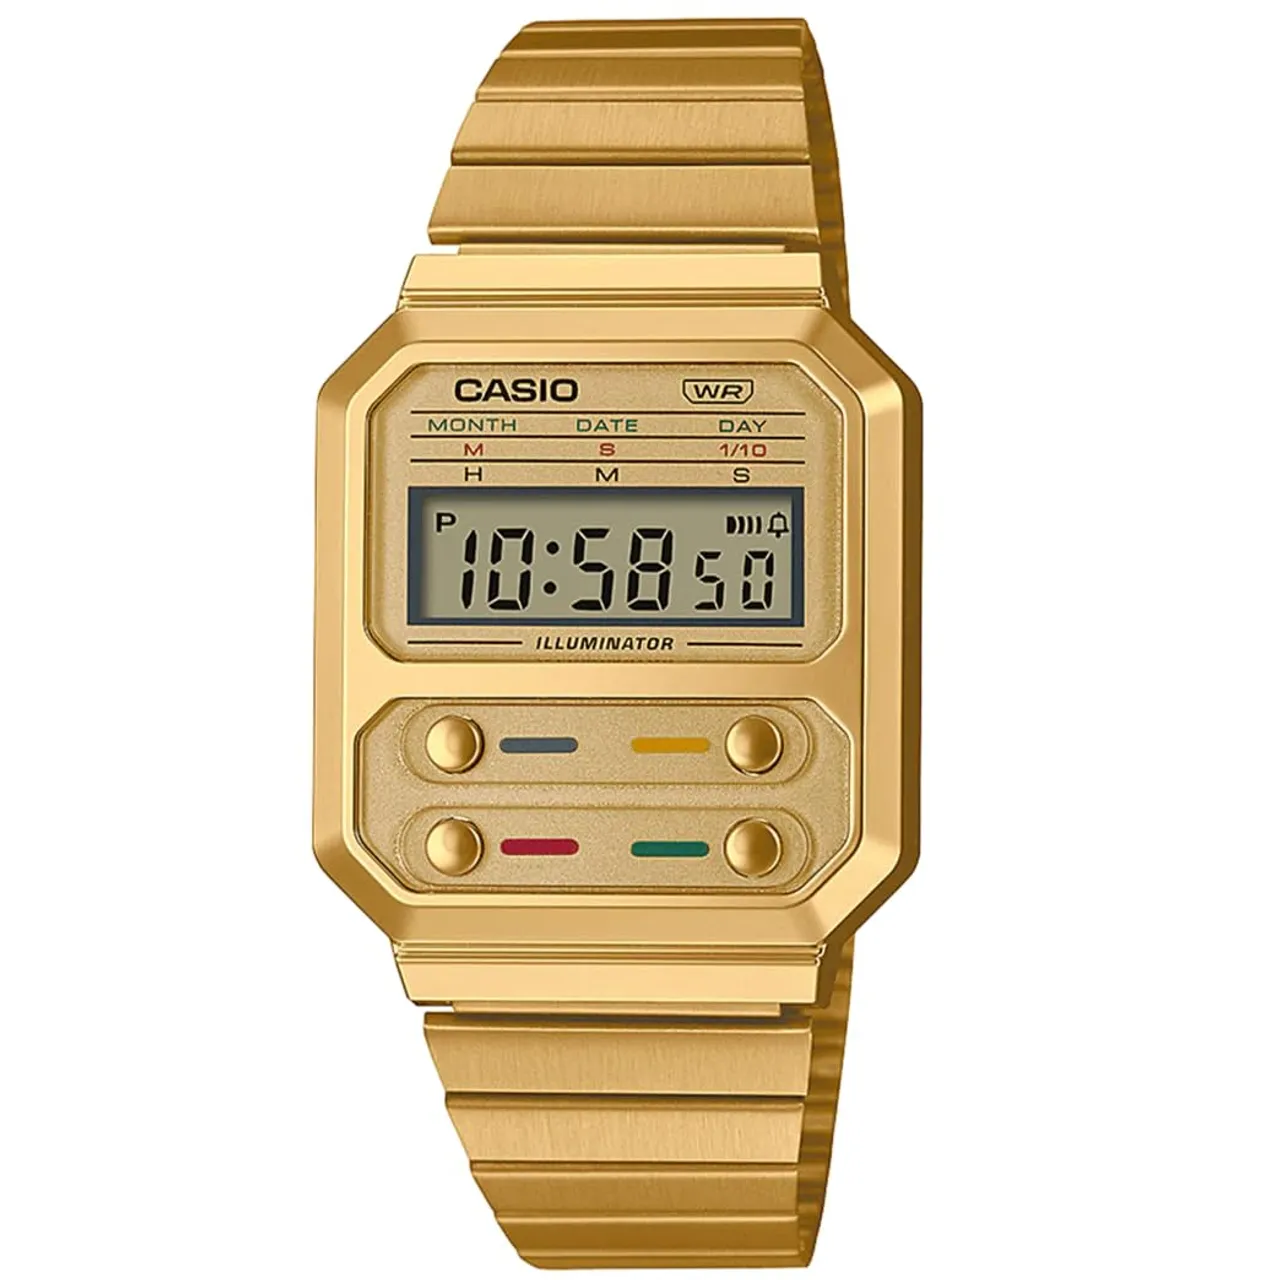 Casio Men's Digital Quartz Watch with Stainless Steel Strap